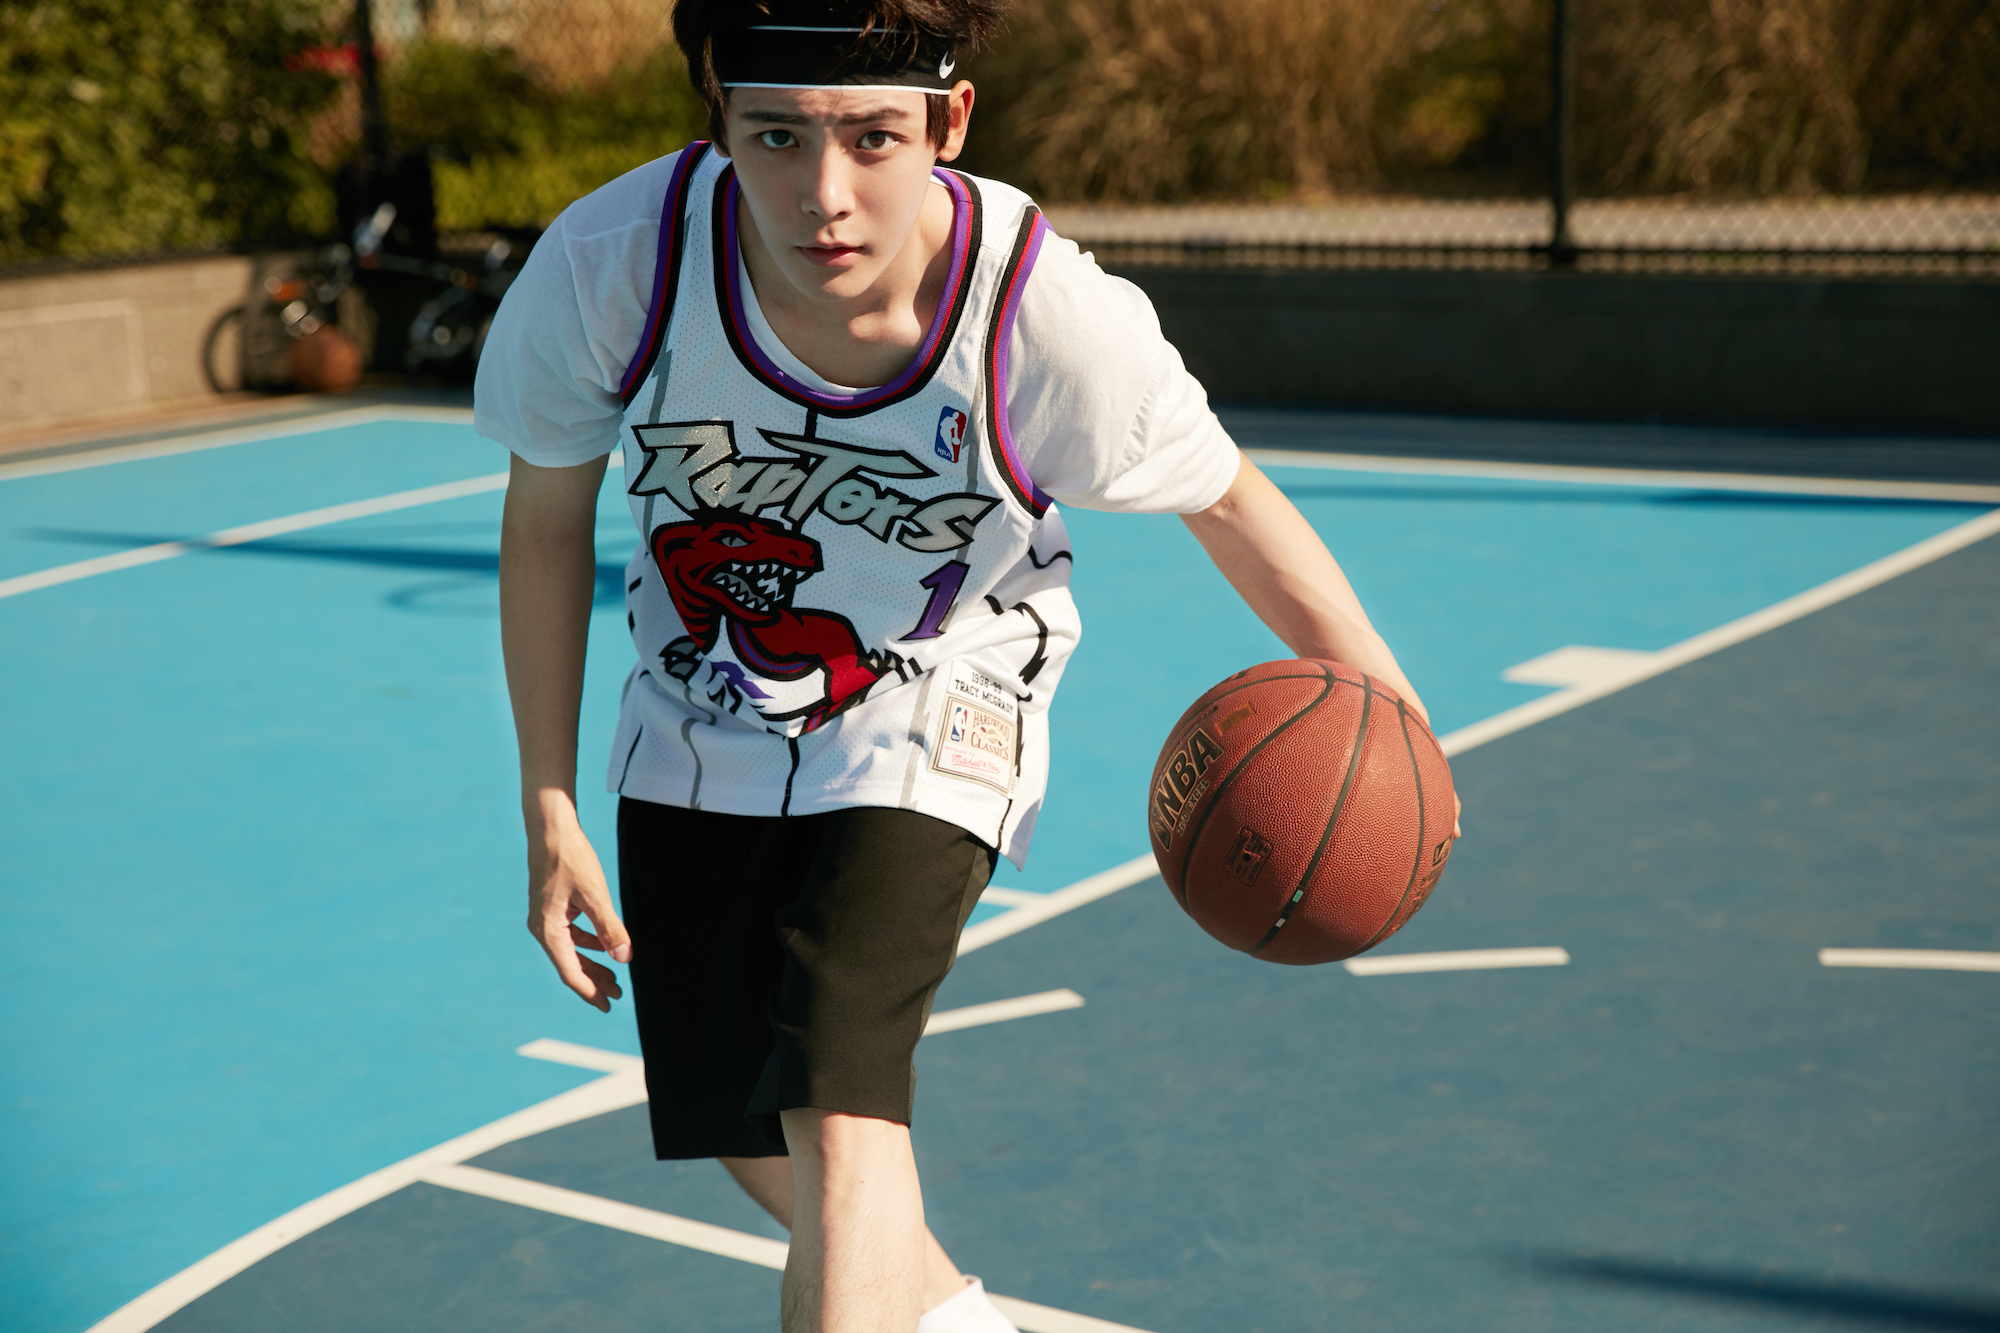 侯明昊街头篮球写真享受肆意运动青春